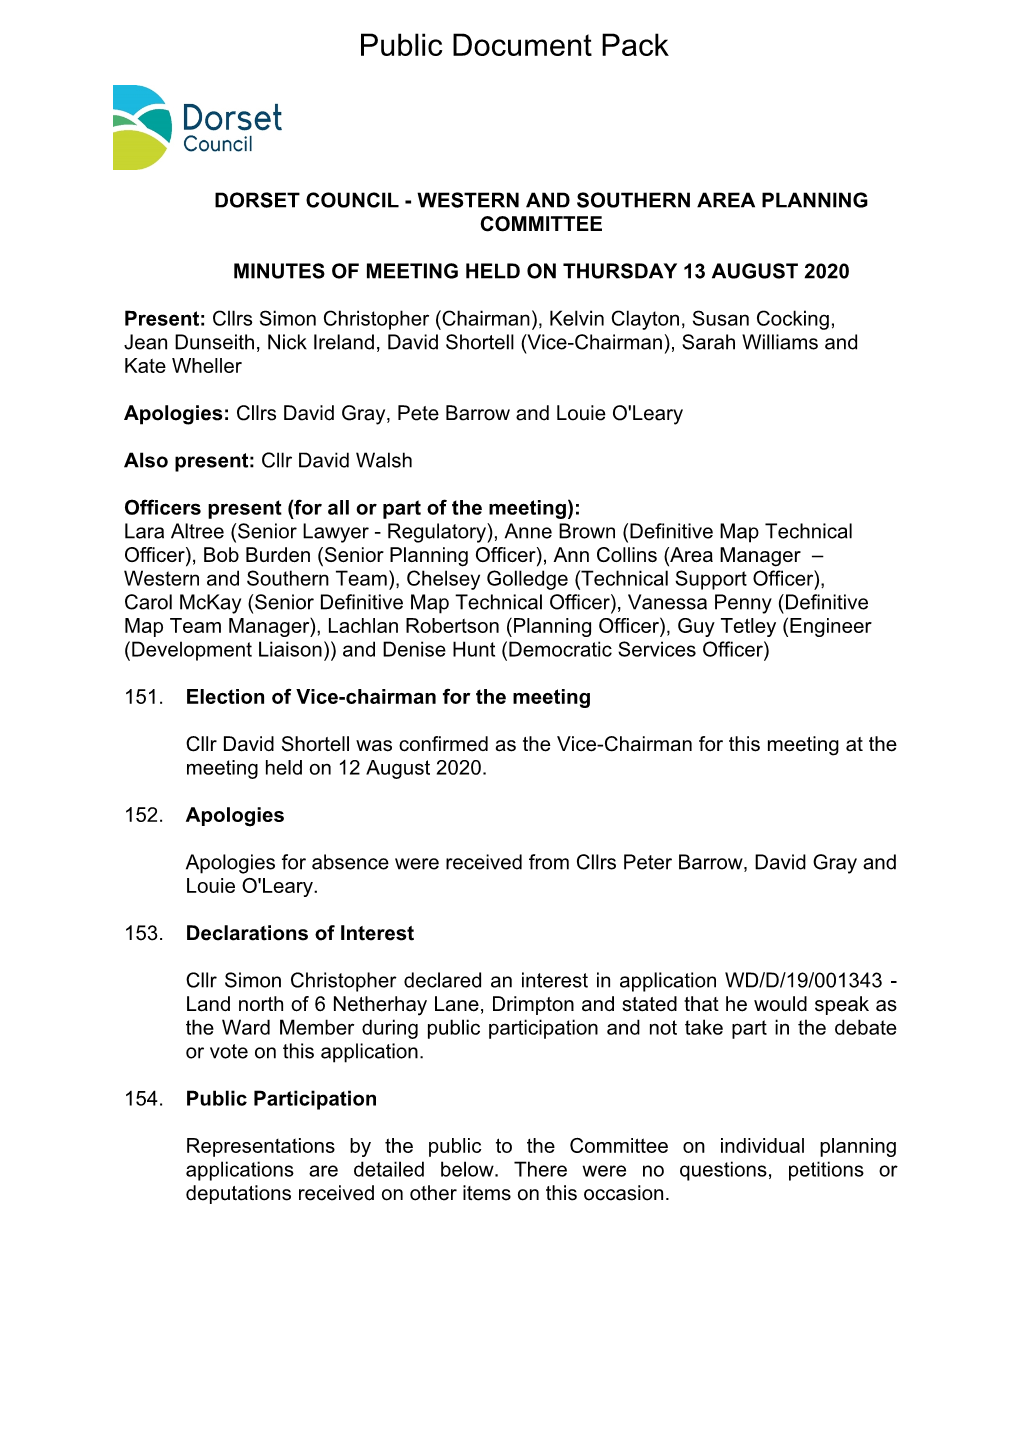 (Public Pack)Minutes Document for Dorset Council